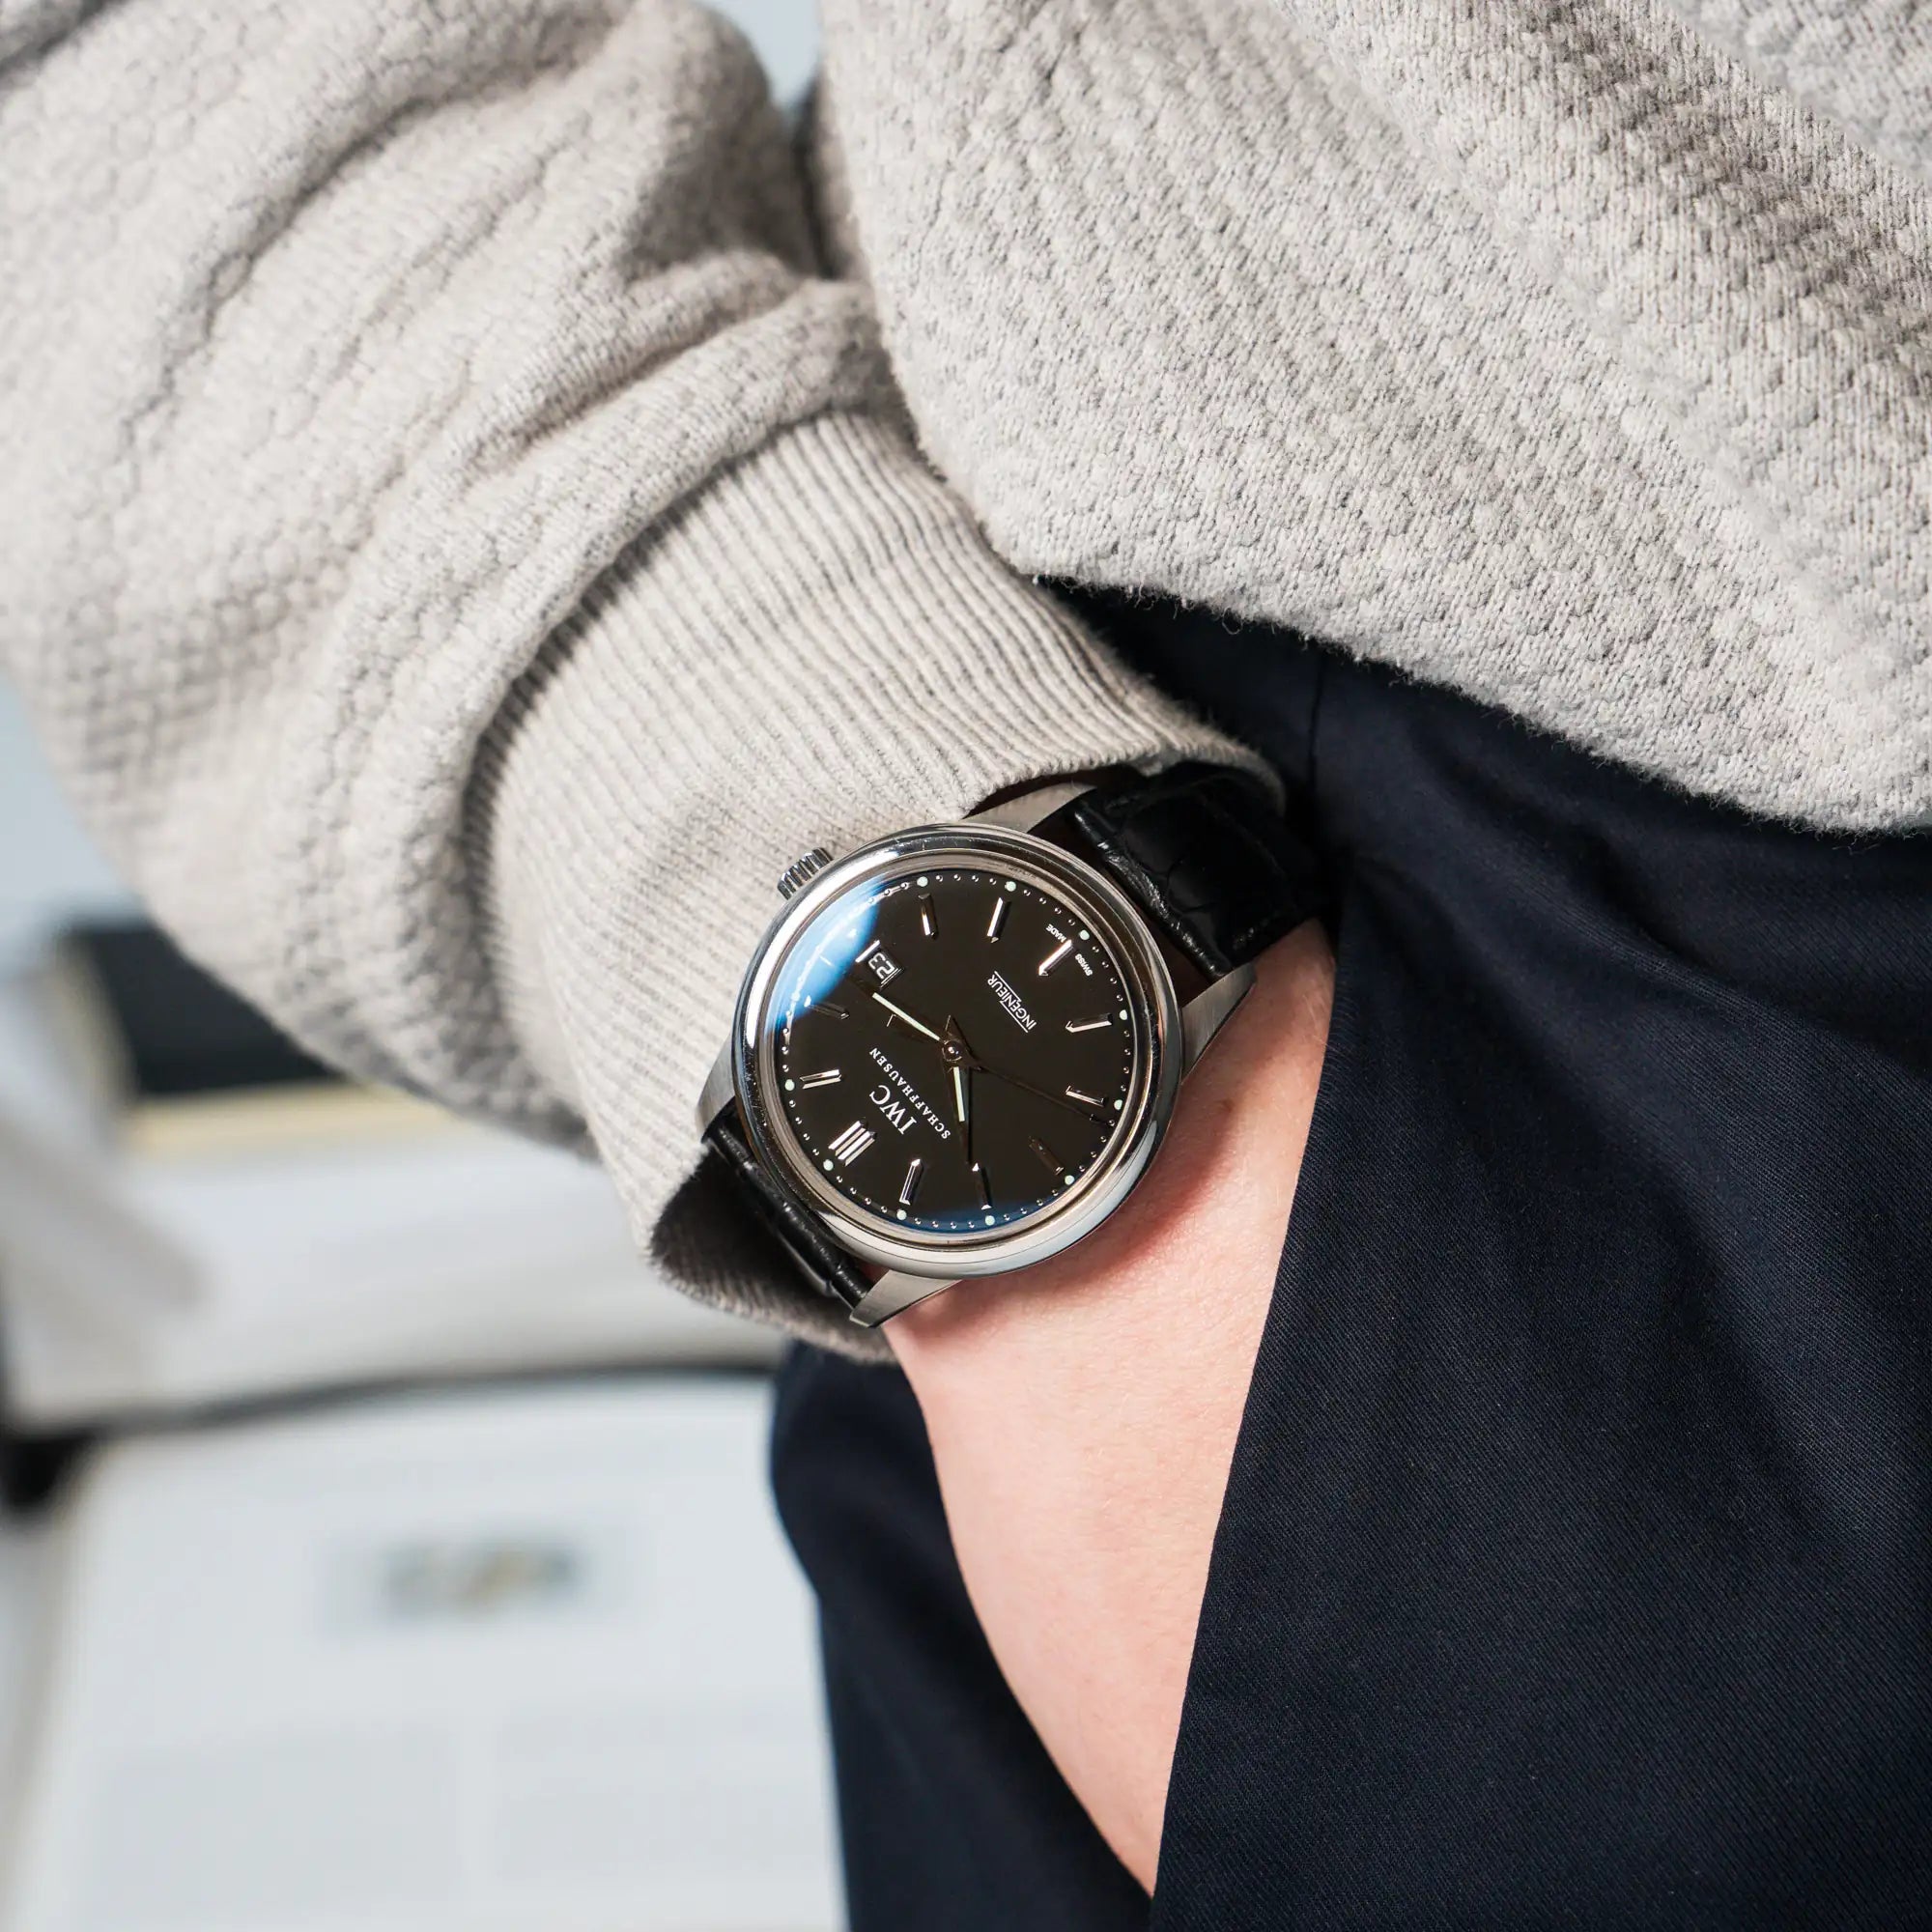 Mann trägt die IWC Schaffhausen Uhr "Ingenieur" mit der Referenz IW323301 mit schwarzem Zifferblatt an seinem Handgelenk, während die Hand in seiner Hosentasche steckt